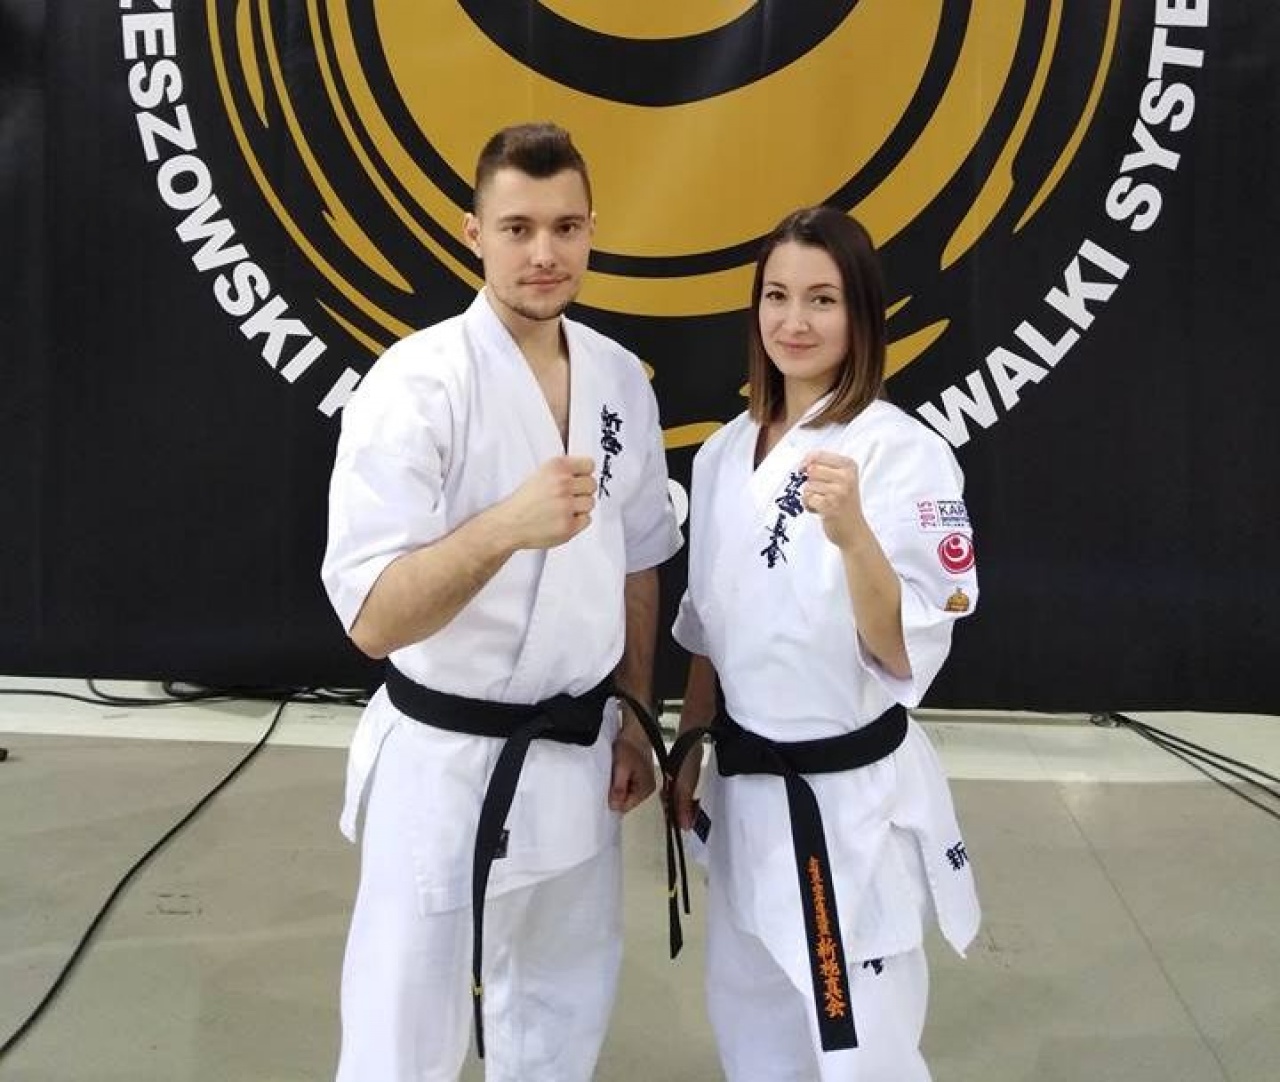 Karate ezüst és bronz Lengyelországból - a Berencsi testvérpár érmeket szerzett